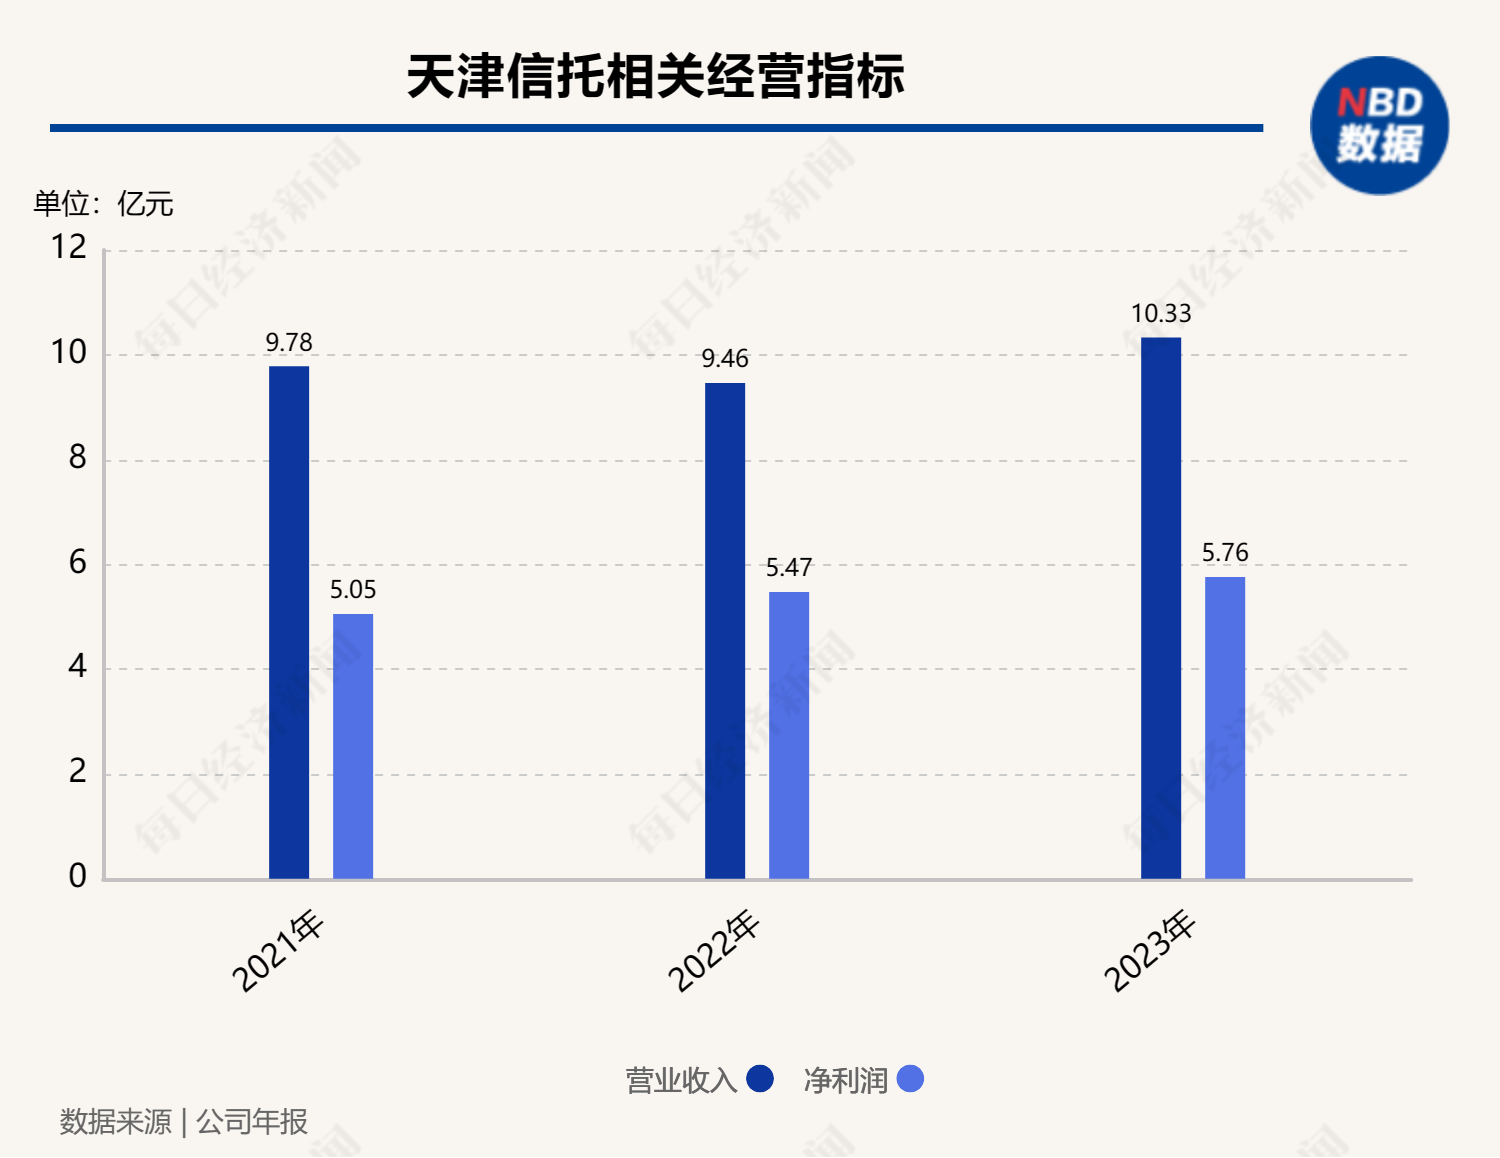 年末又一家信托公司翻倍增资，天津信托增资至36亿元